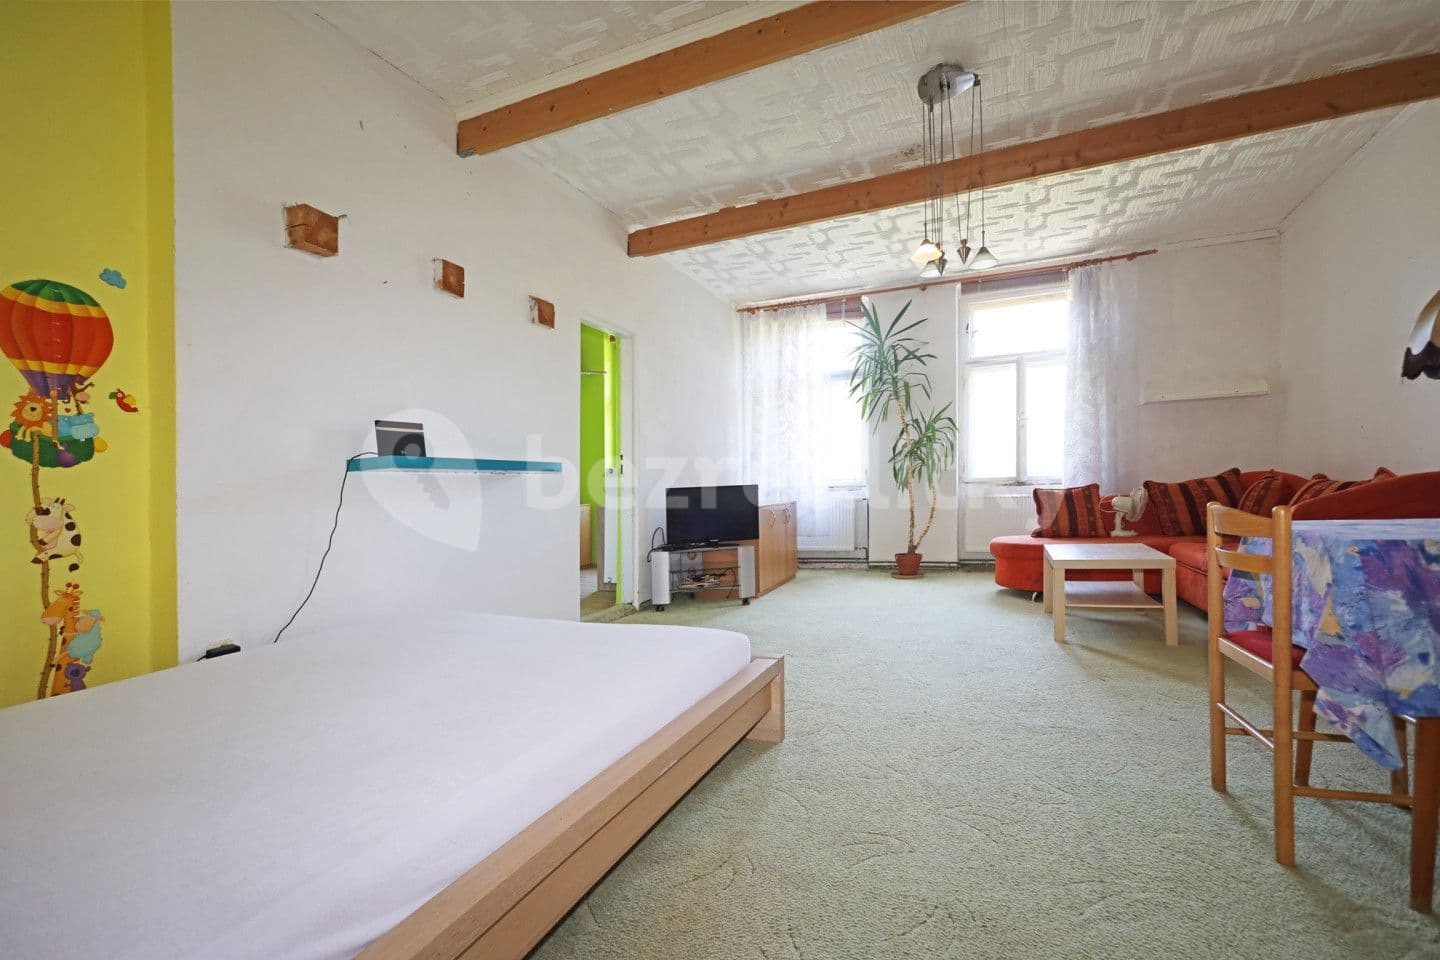 2 bedroom flat for sale, 60 m², Nebozízek, Karlovy Vary, Karlovarský Region